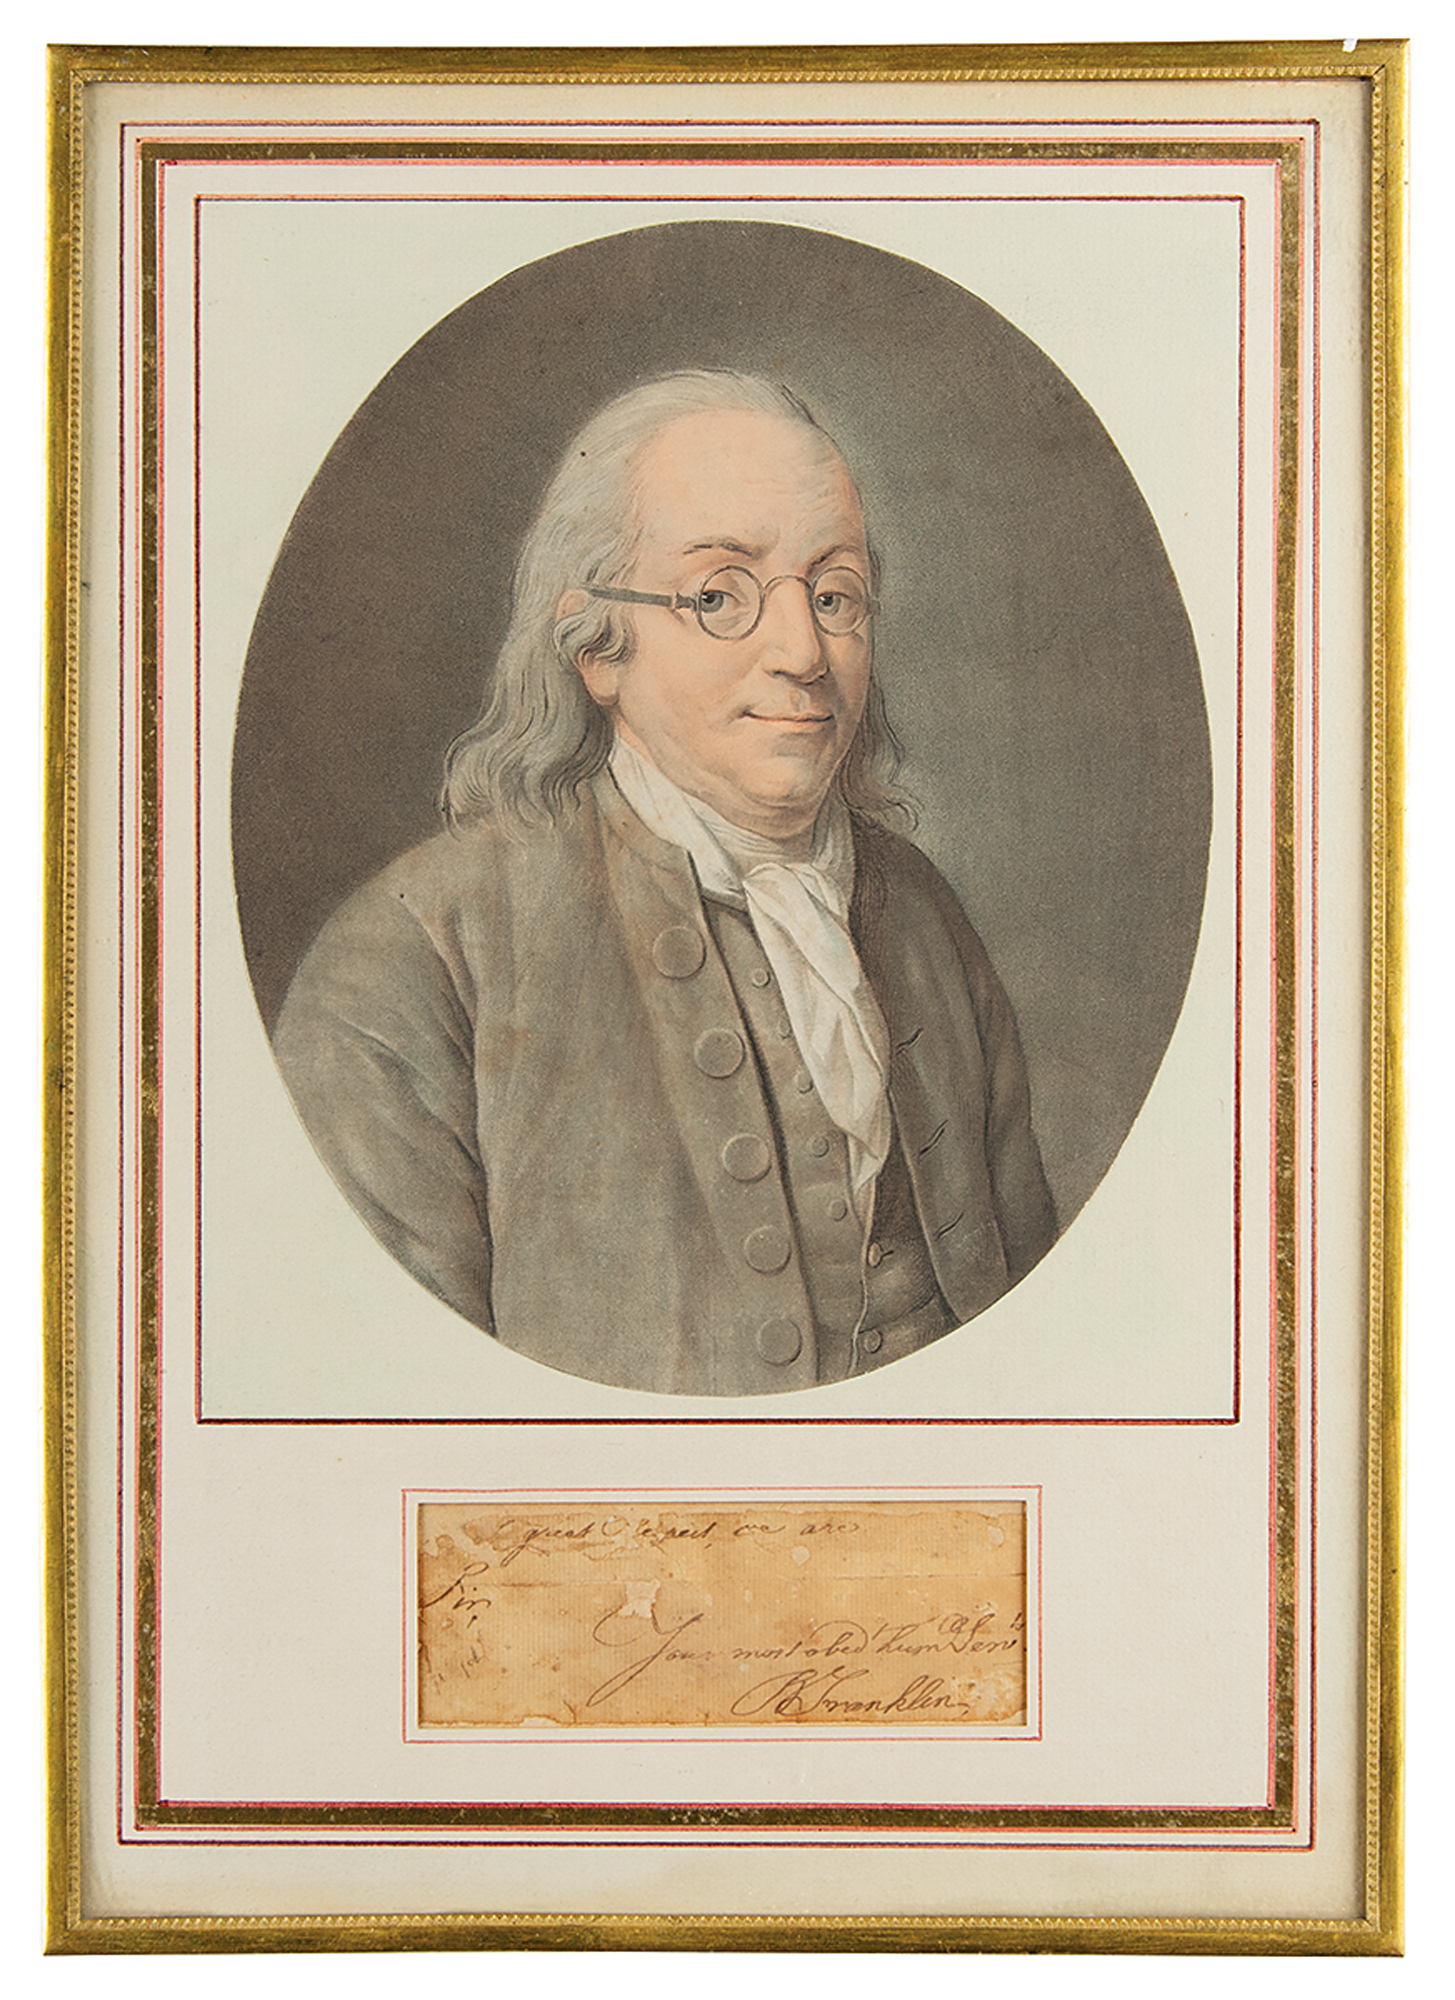 Lot #104 Benjamin Franklin Signature and Handwriting